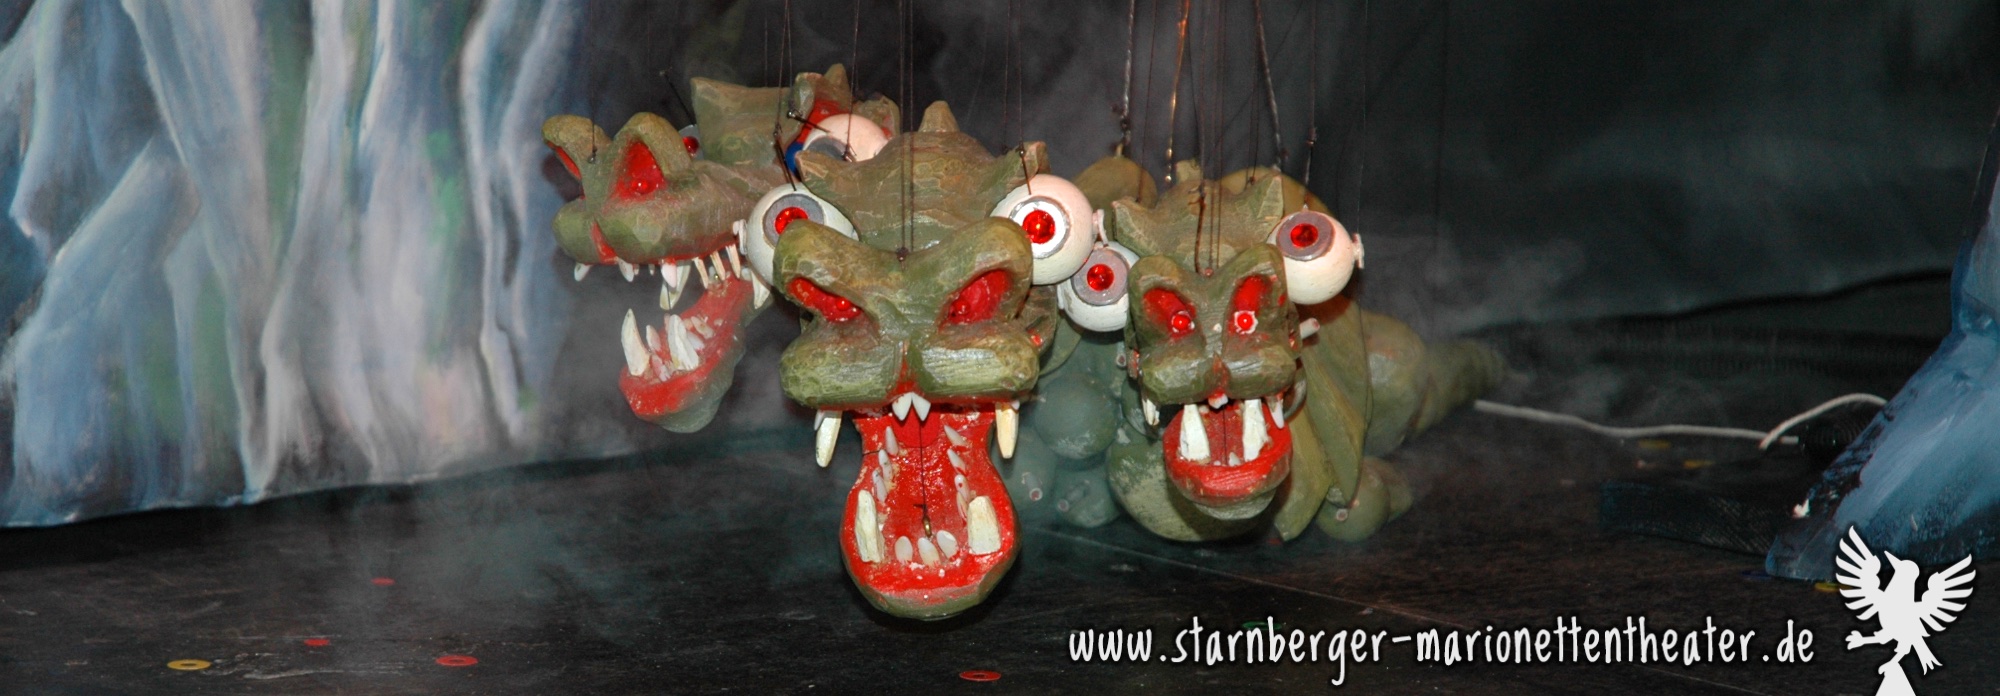 Starnberger Marionettentheater -Prinz Rosenrot